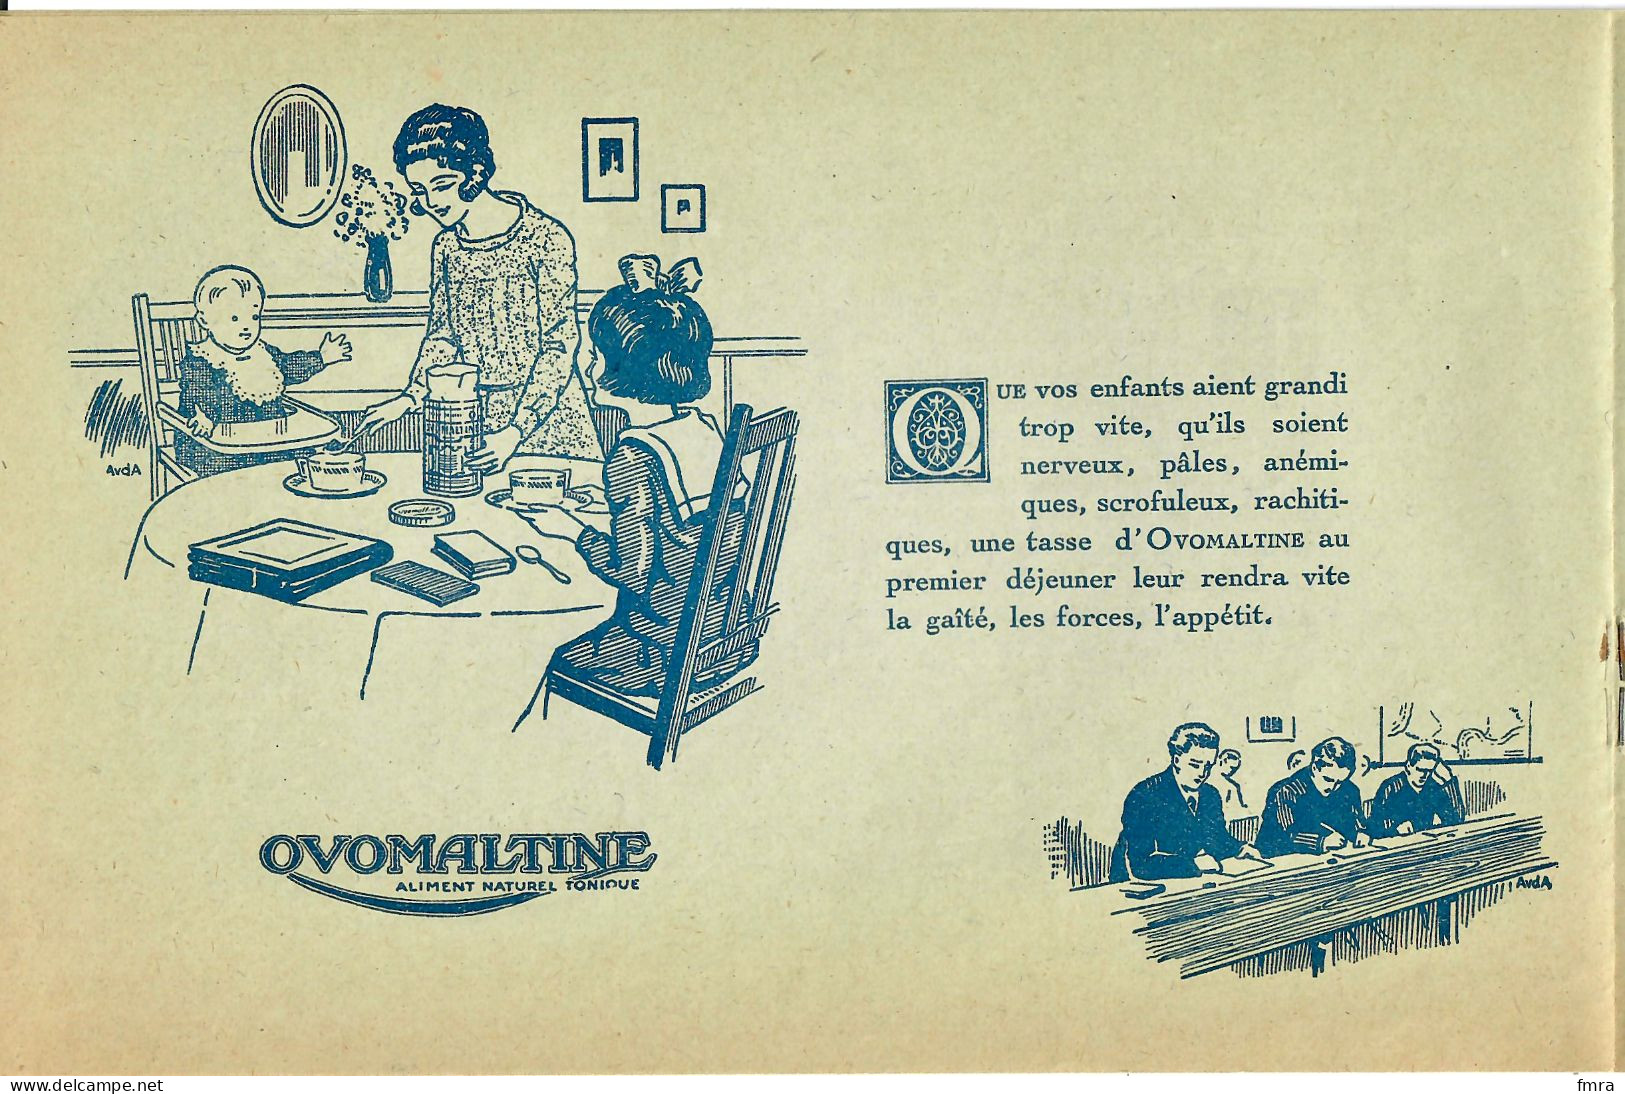 Rare Document 12 Pages - OVOMALTINE - 1923 - Très Illustré (AvdA) - 20,5 X 13,5 Cm - TBE/GP80 - Publicités